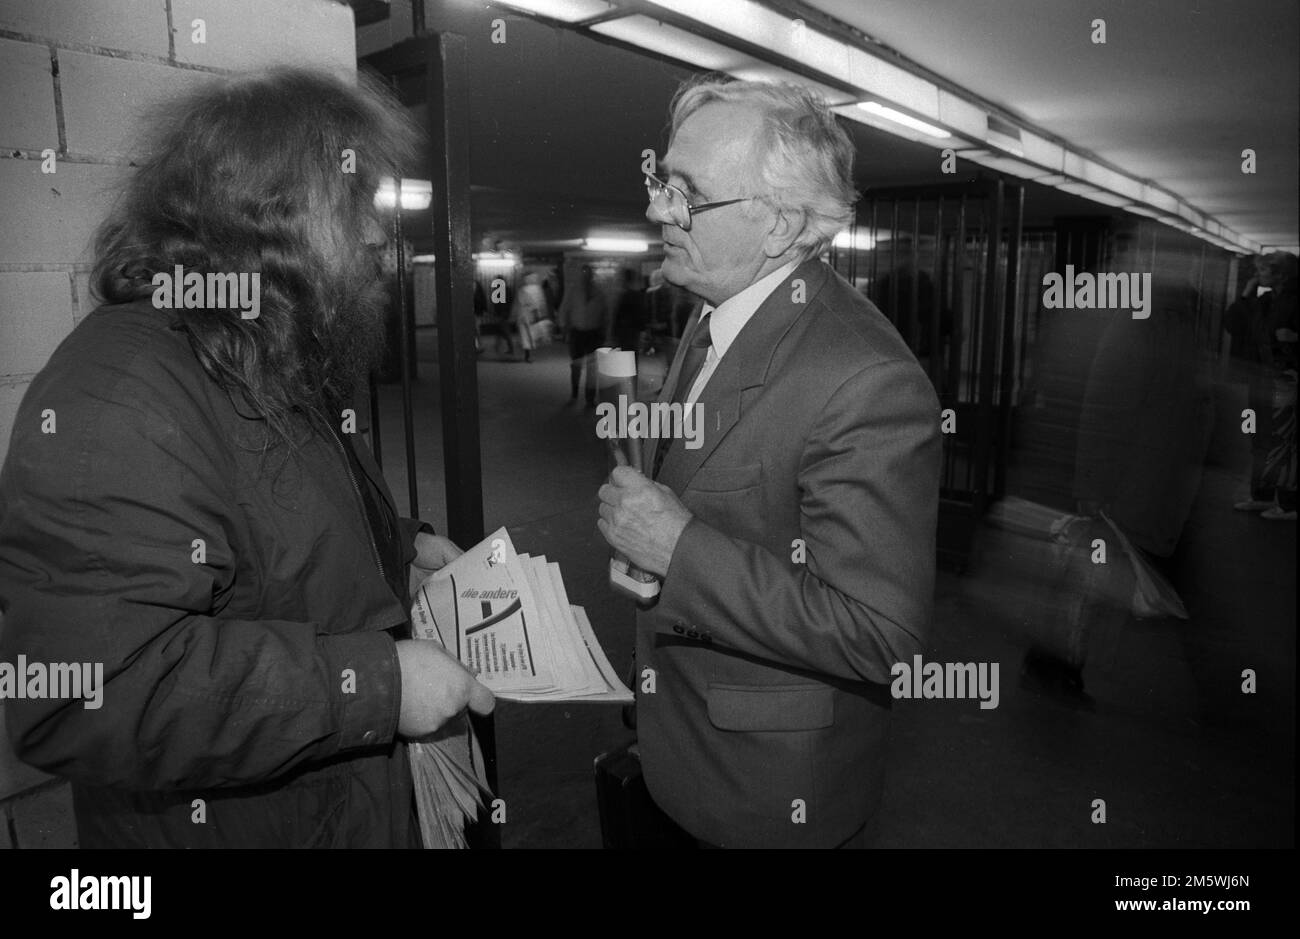 Germania, Berlino, 19. 03. 1991, pubblicazione dei libri paga di Stasi da parte dell'altro, Wolfgang Rueddenklau vende ad Alexanderplatz Foto Stock